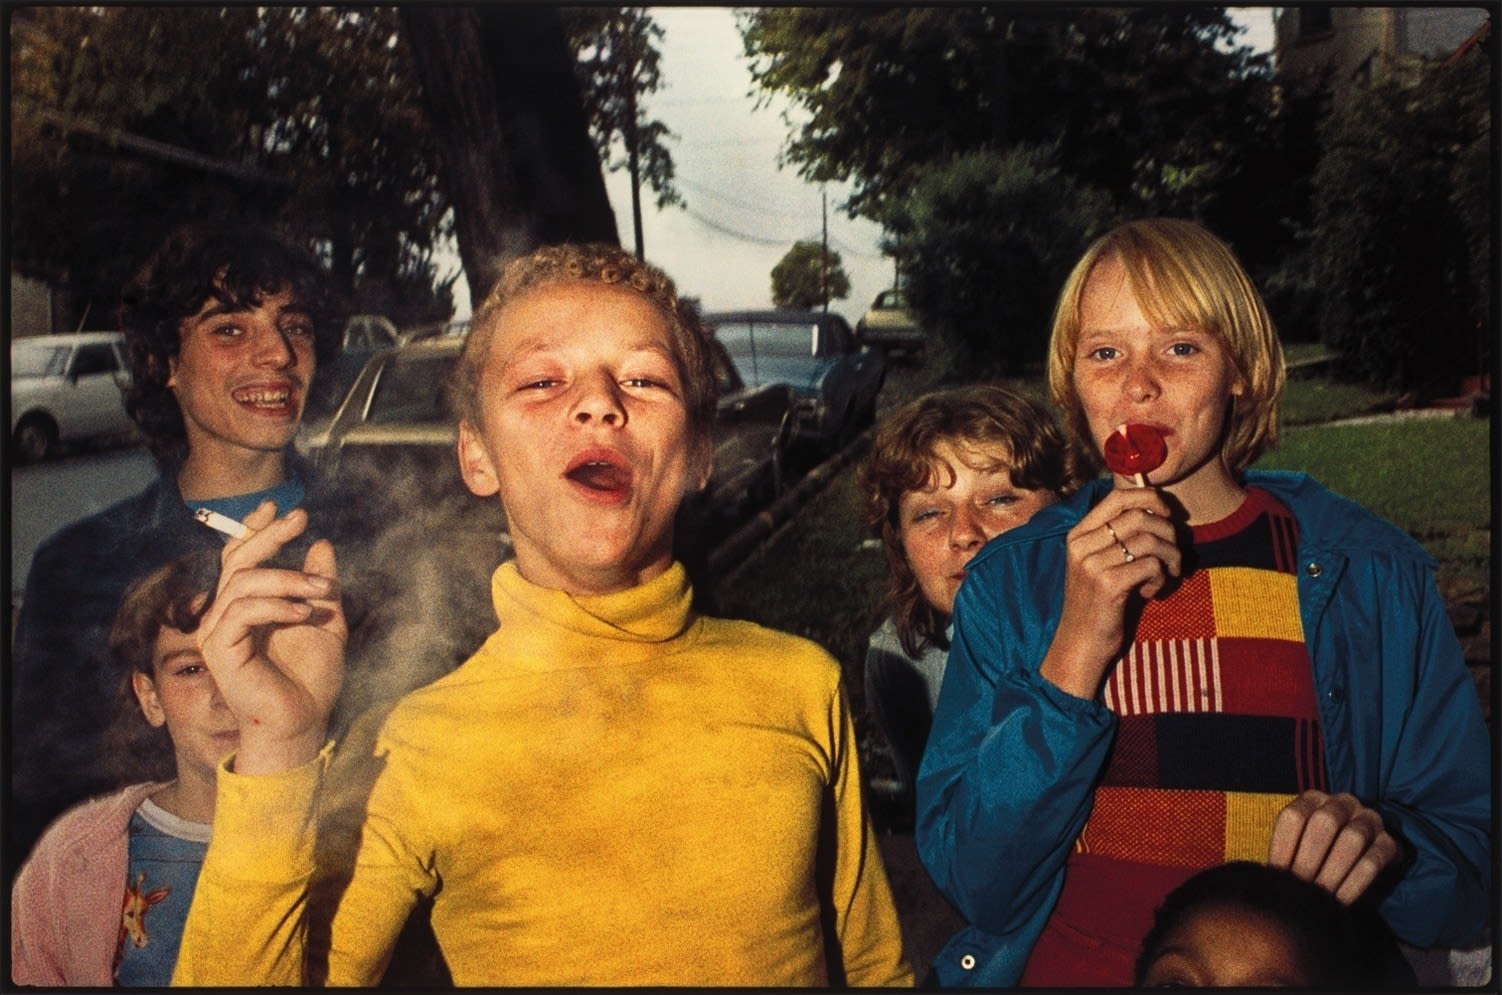 Mark Cohen, Boy in Yellow Shirt Smoking, Scranton, Pennsylvania, 1977/later